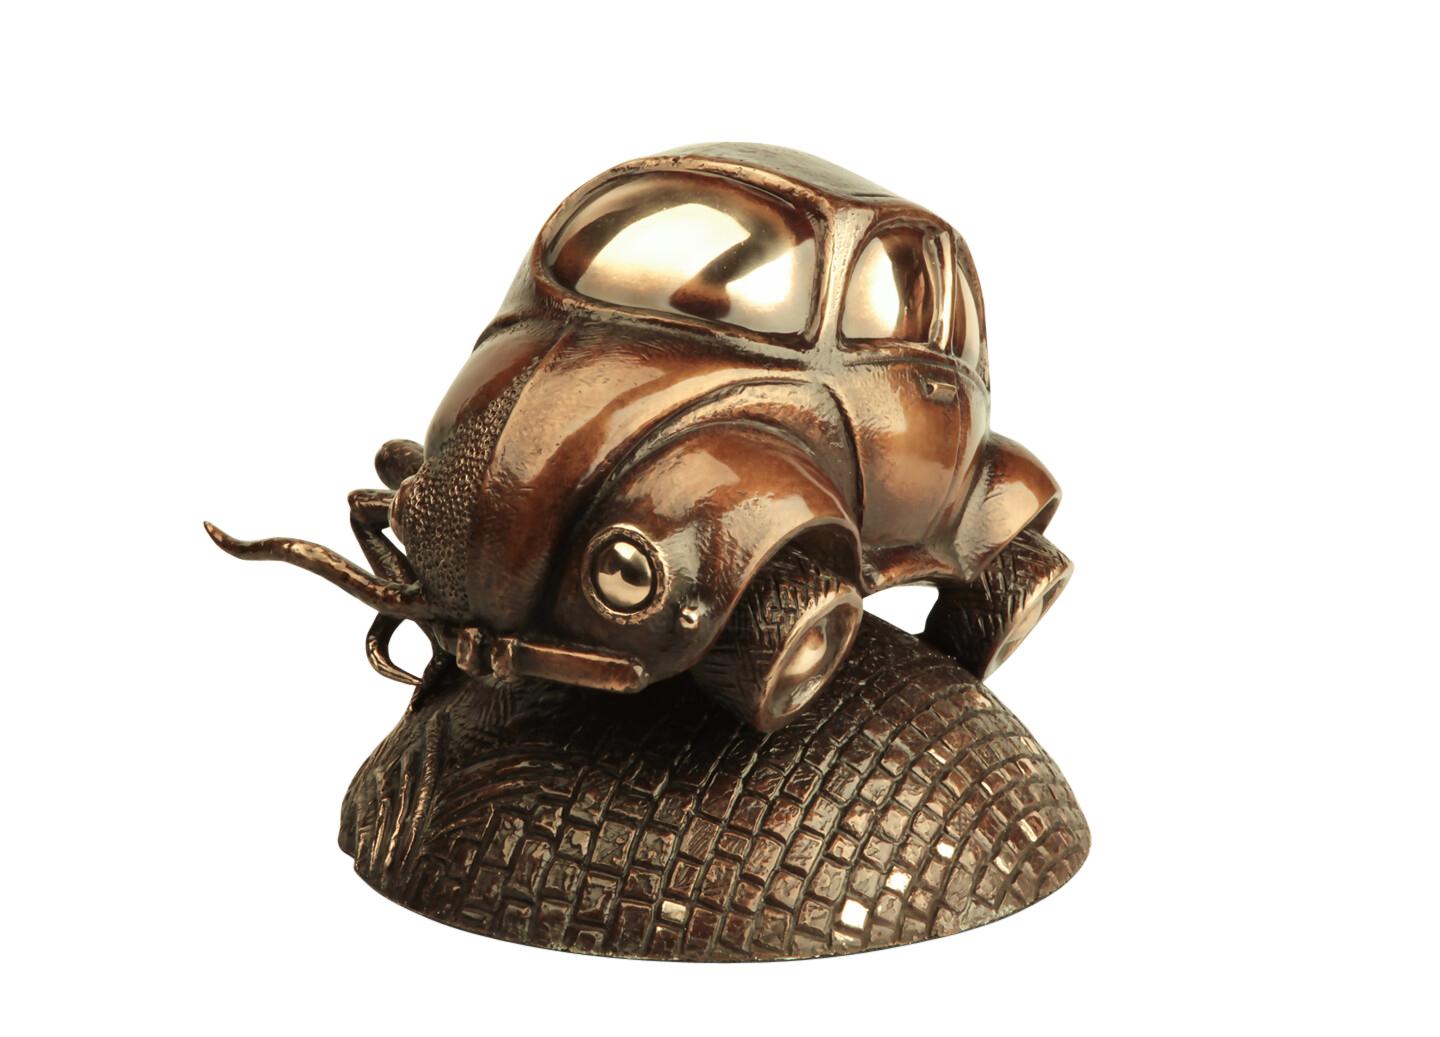 Volodymyr MYKYTENKO Figurative Sculpture - Beetle-beetle, Bronze Sculpture by Volodymyr Mykytenko, 2019